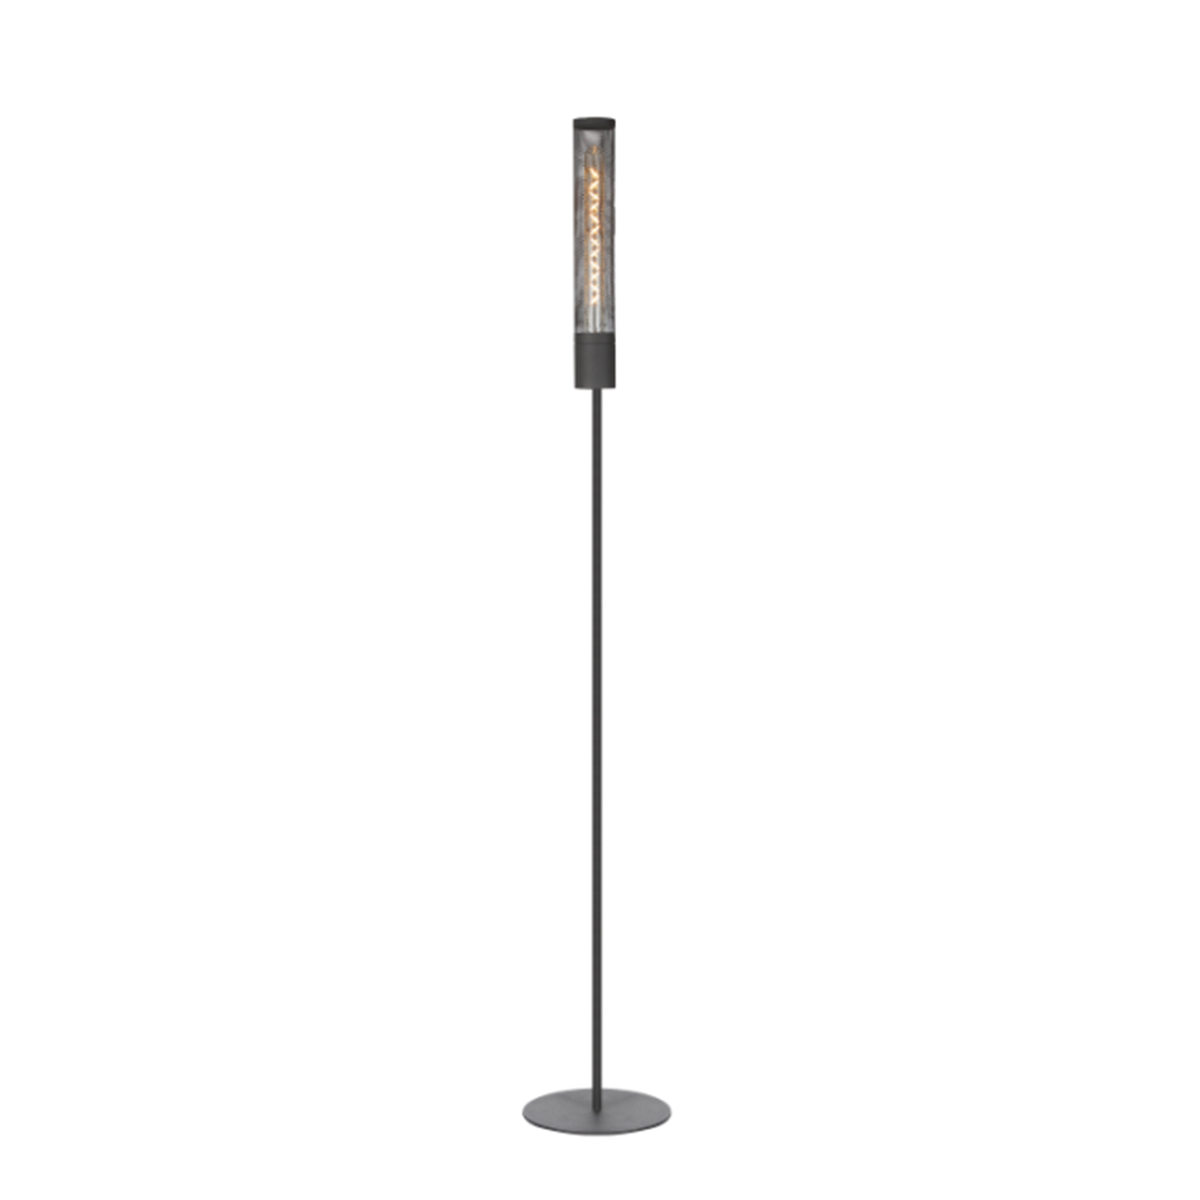 Tangla lighting - TLF3009-01SB - LED floor lamp 1 Light - metal in sand black - solo - E27